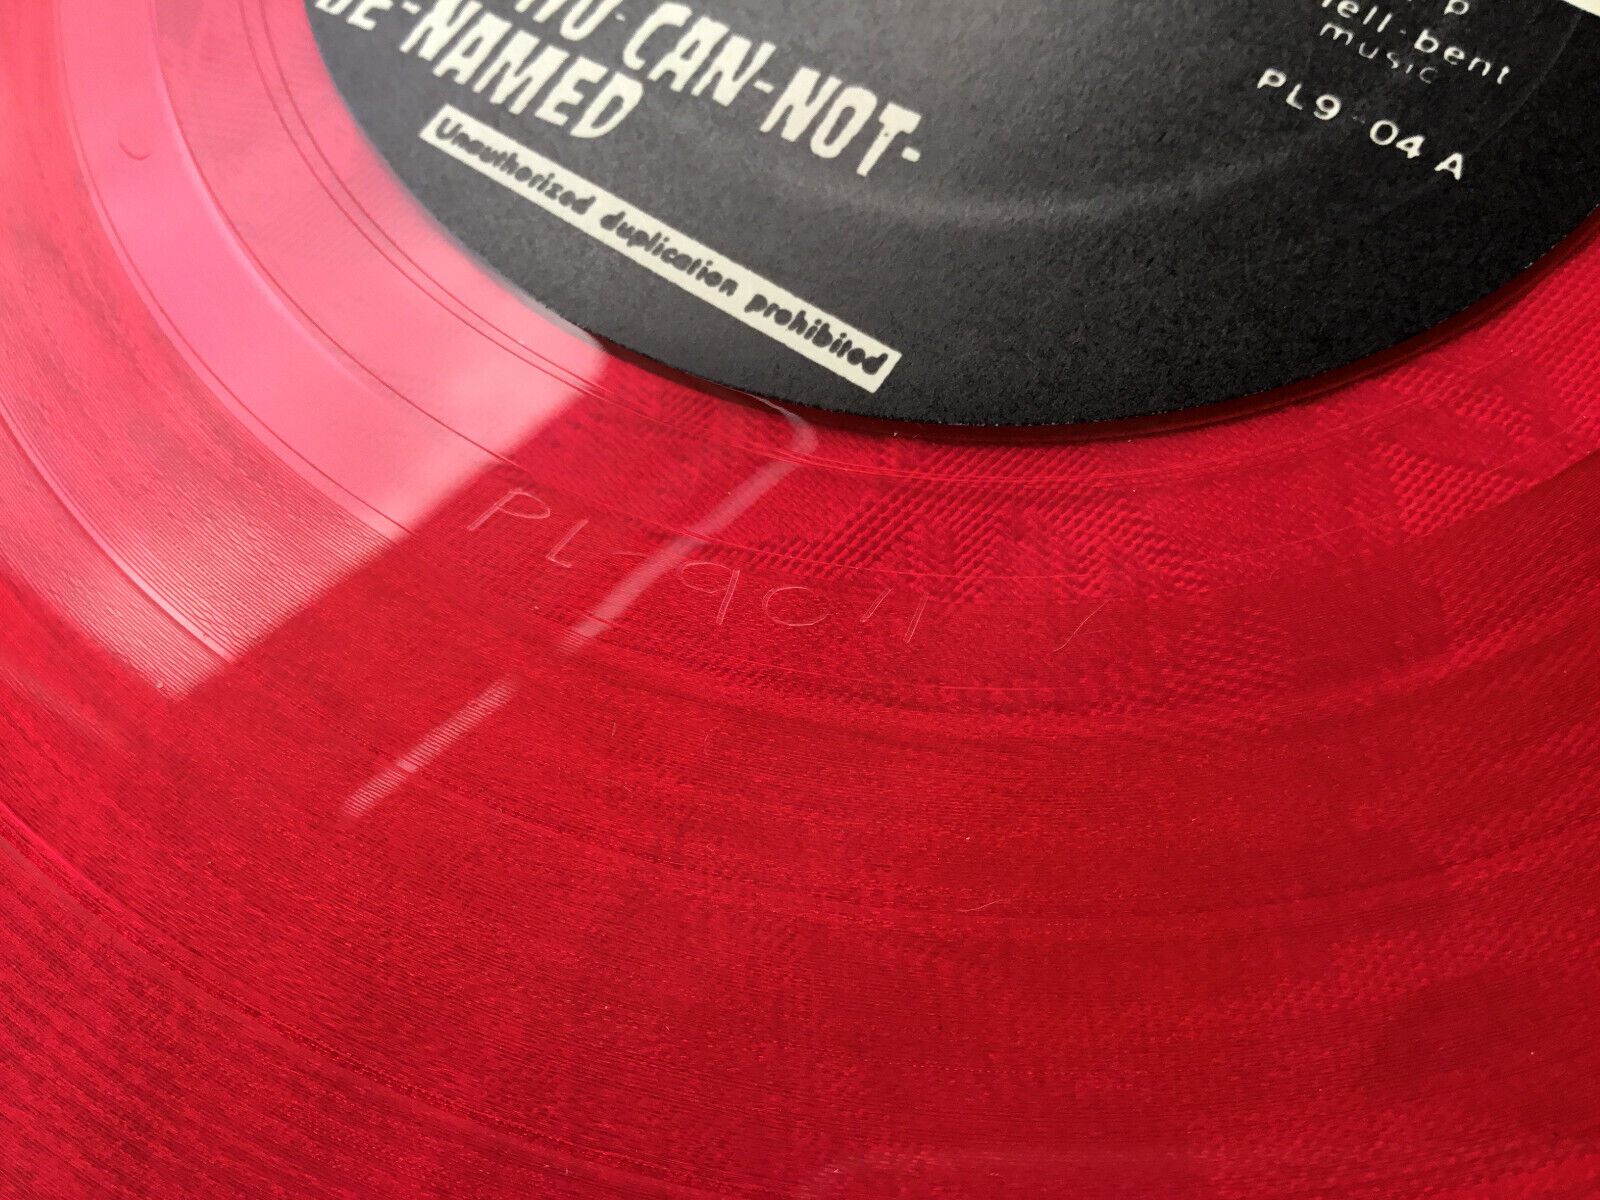 Pic 2 Samhain-Initium-Pink Colored Vinyl-RARE-OOP-Misfits-Danzig